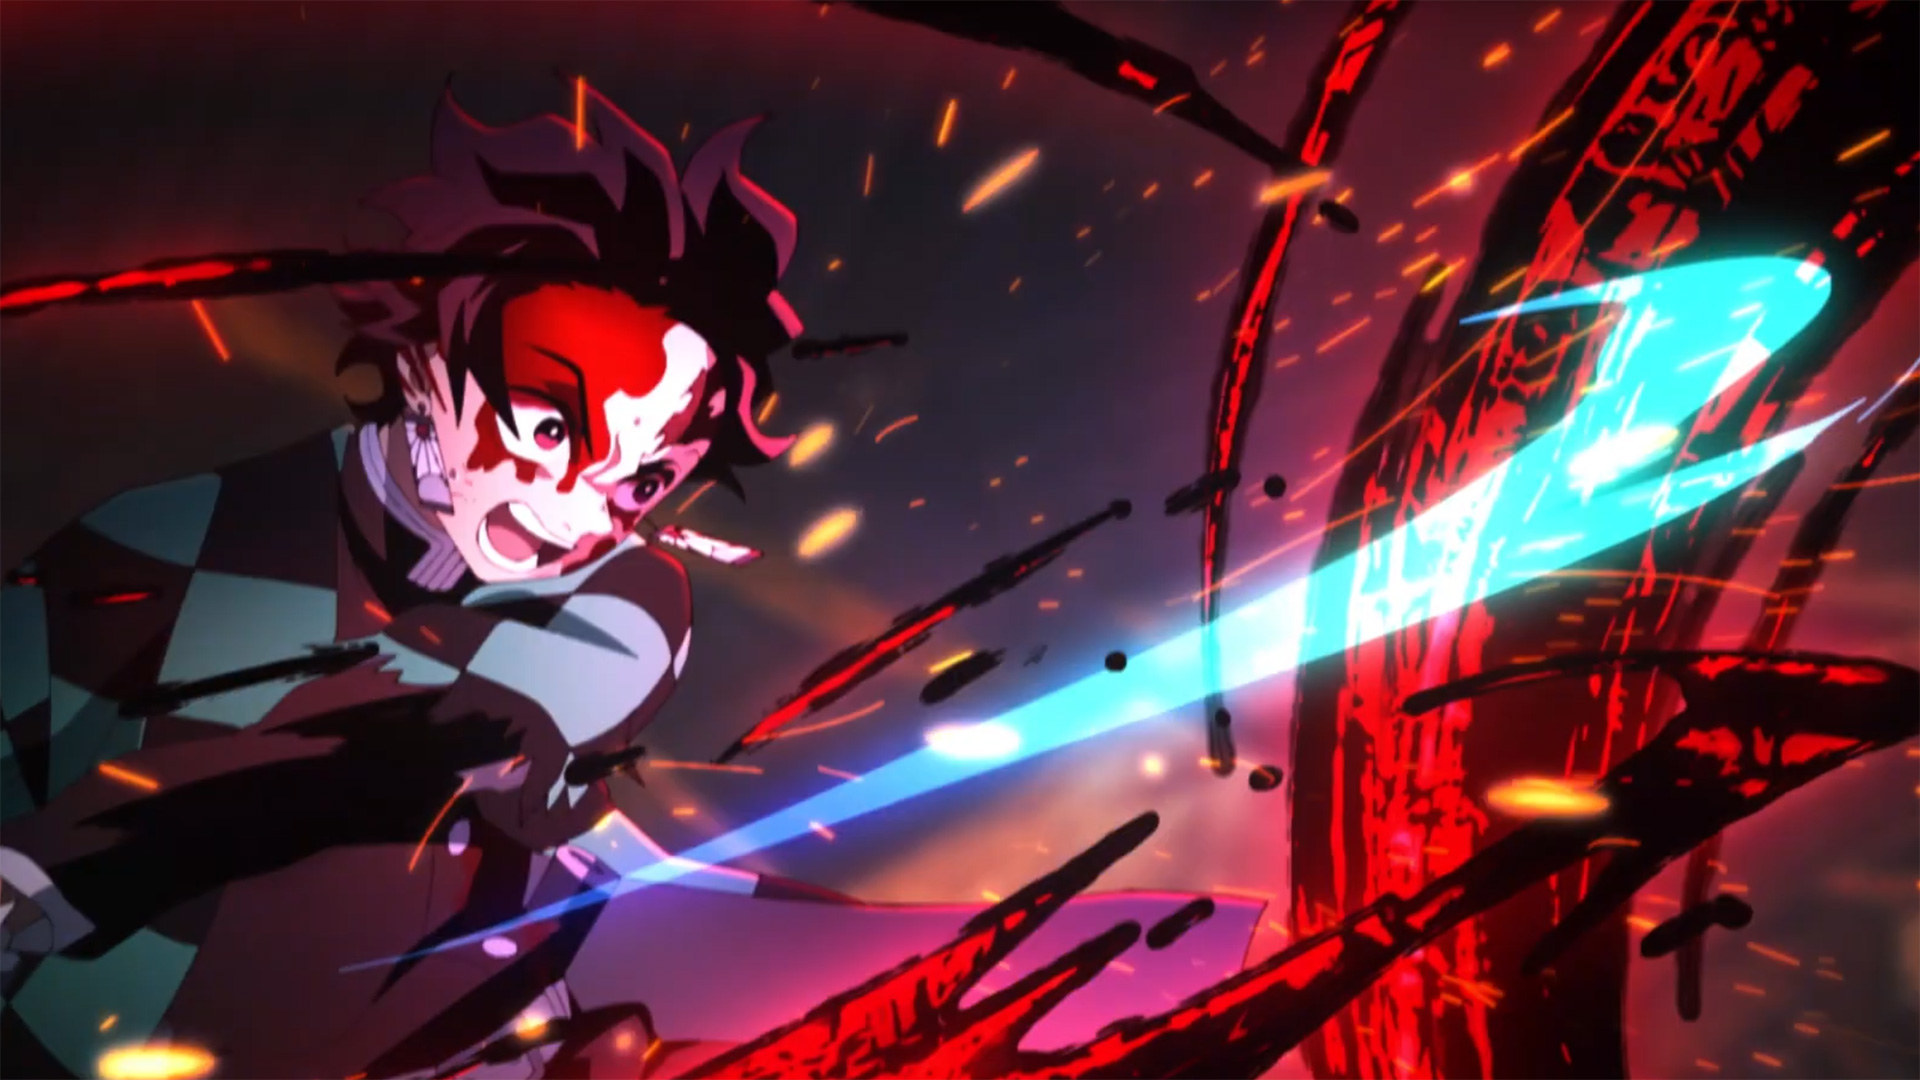 Foi anunciado a 2° temporada do anime - Rascunho de Animes